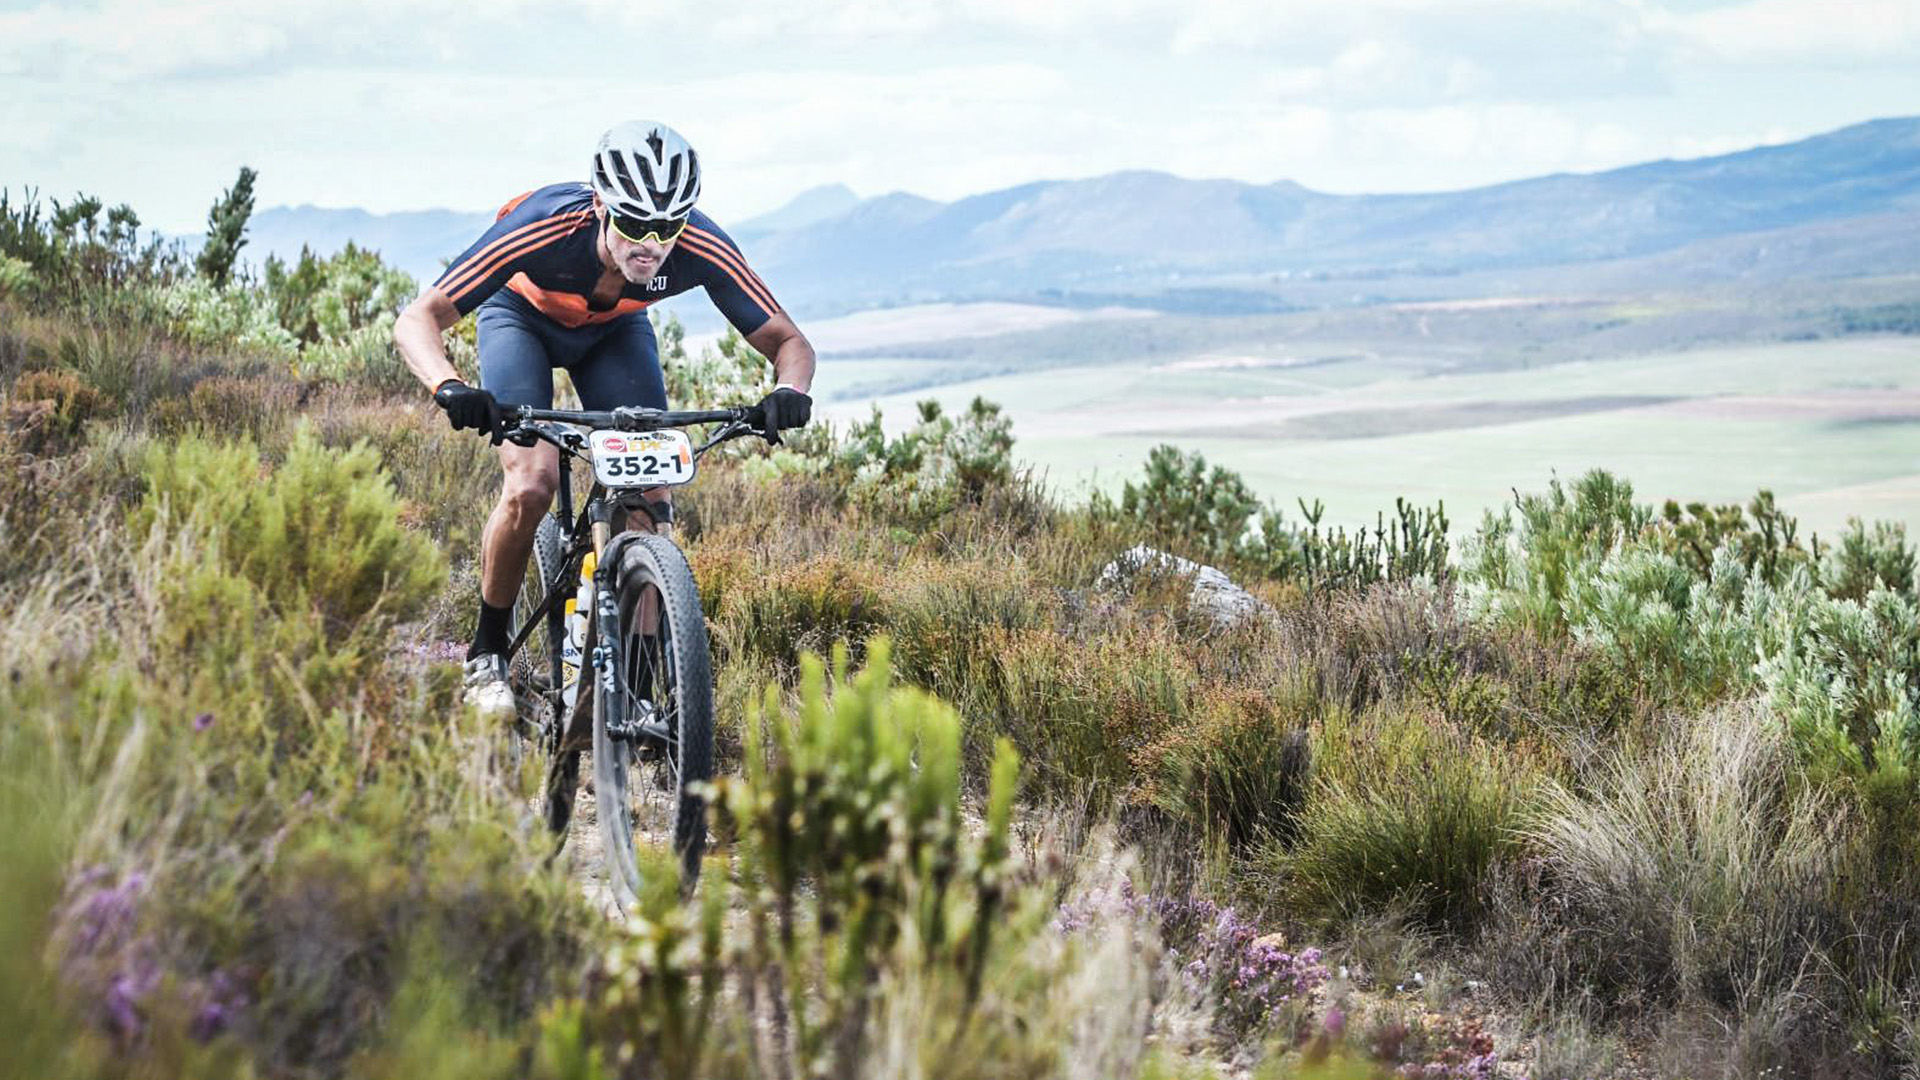 Luis Enrique compite en una de las carreras más exigentes de ciclismo de montaña